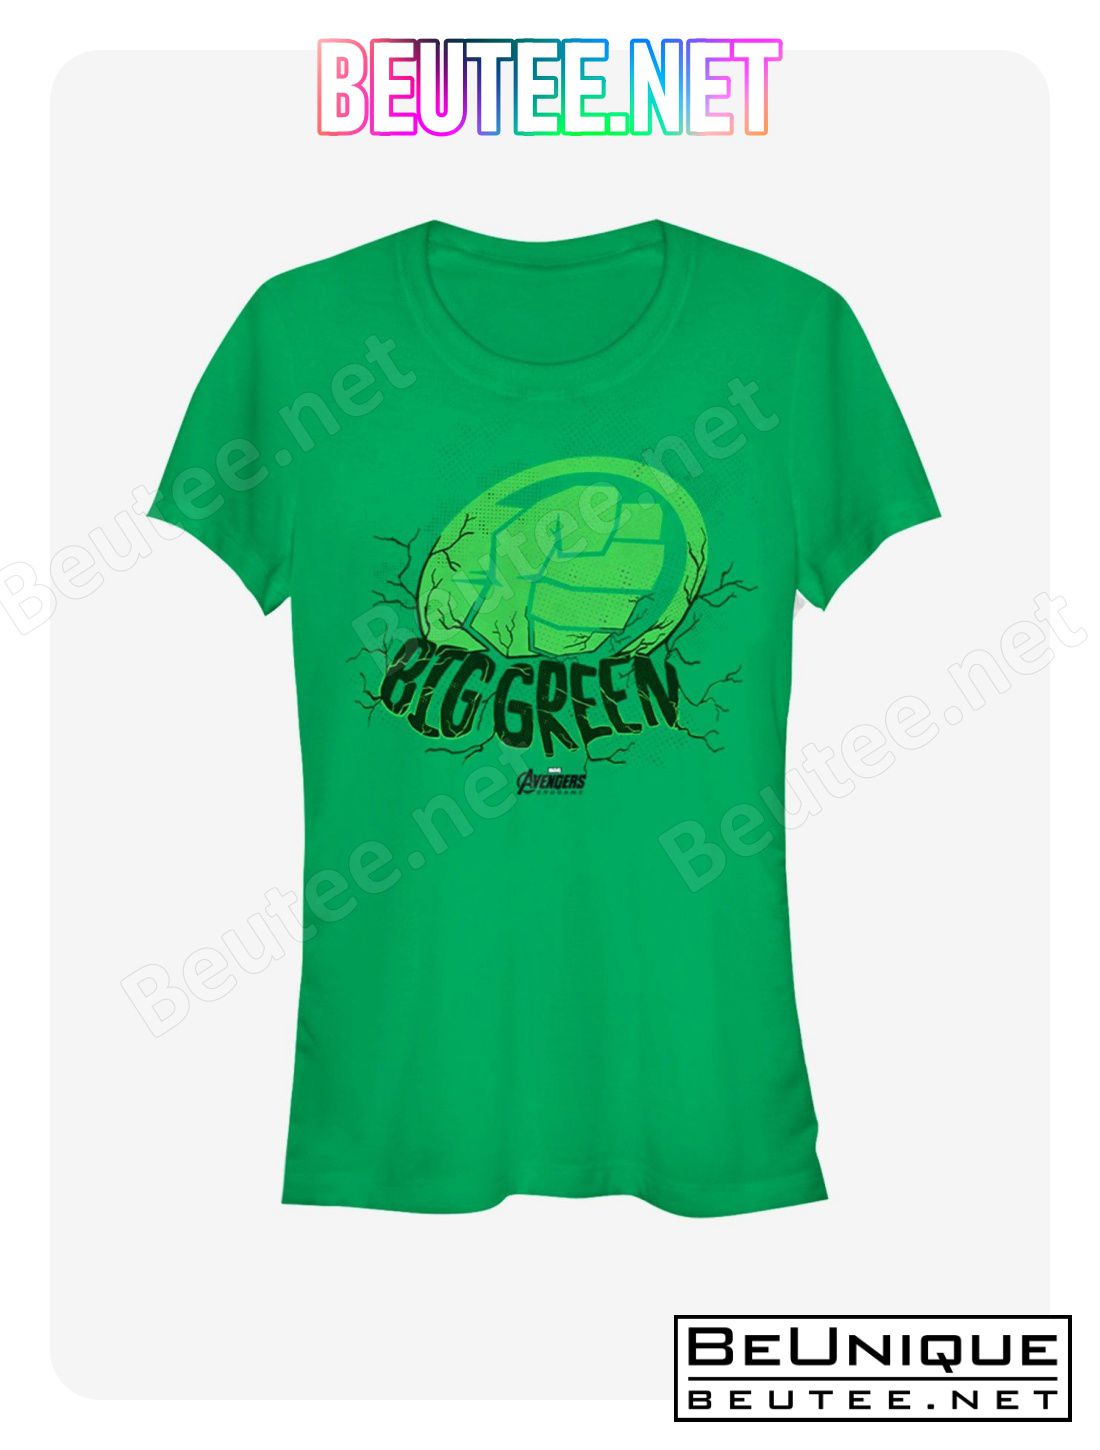 Marvel Avengers Endgame Big Green Girls Kelly Green T-Shirt